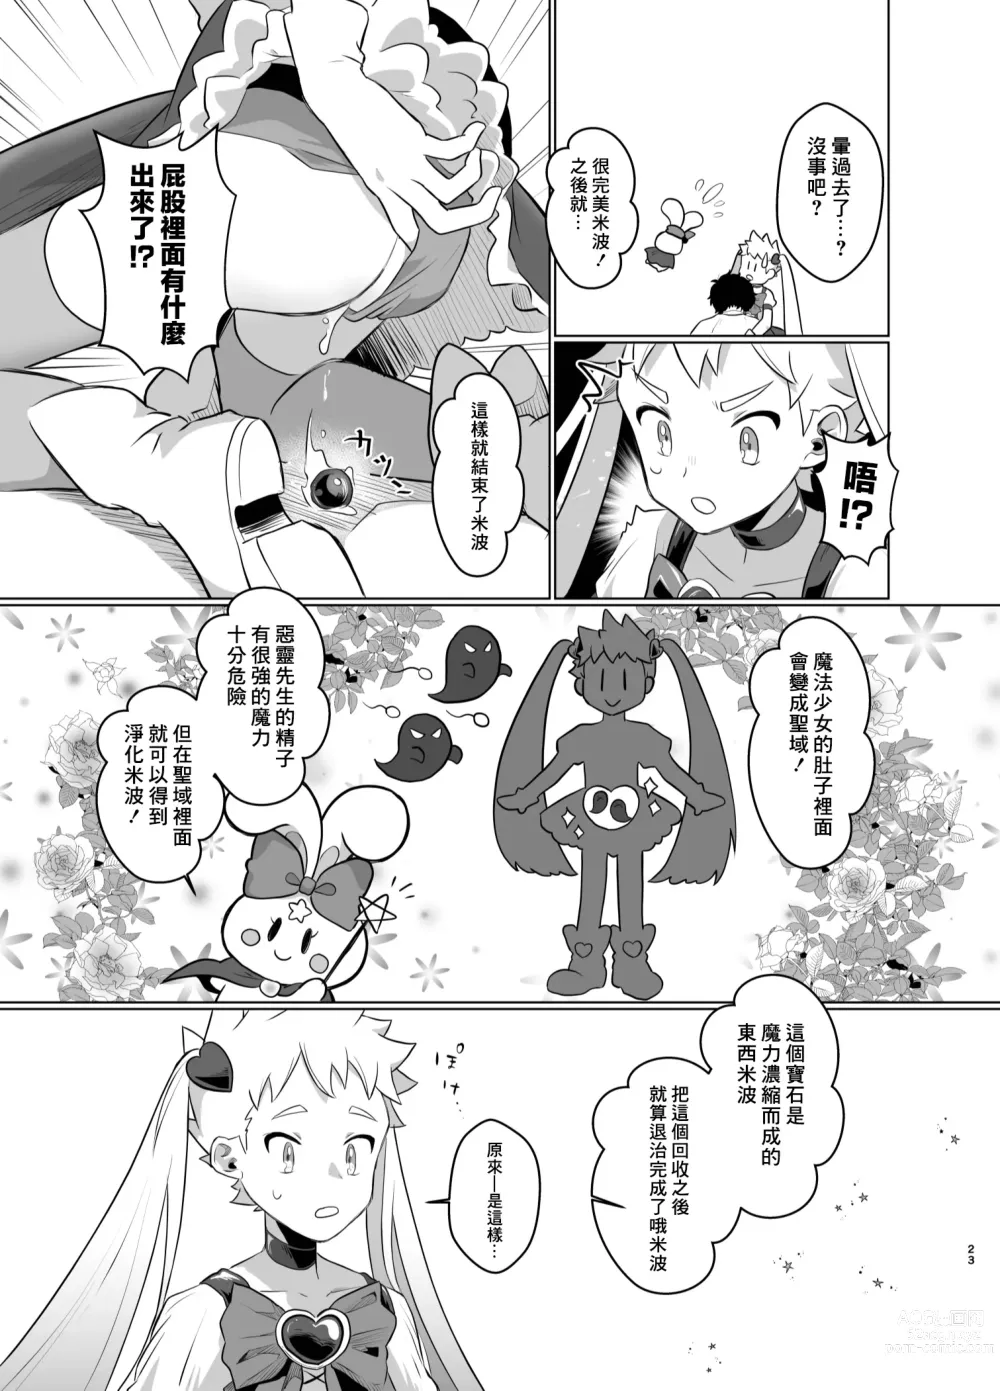 Page 22 of doujinshi Mahou Shoujo Mirakuru Mirachan丨魔法少女奇蹟米拉醬 (decensored)